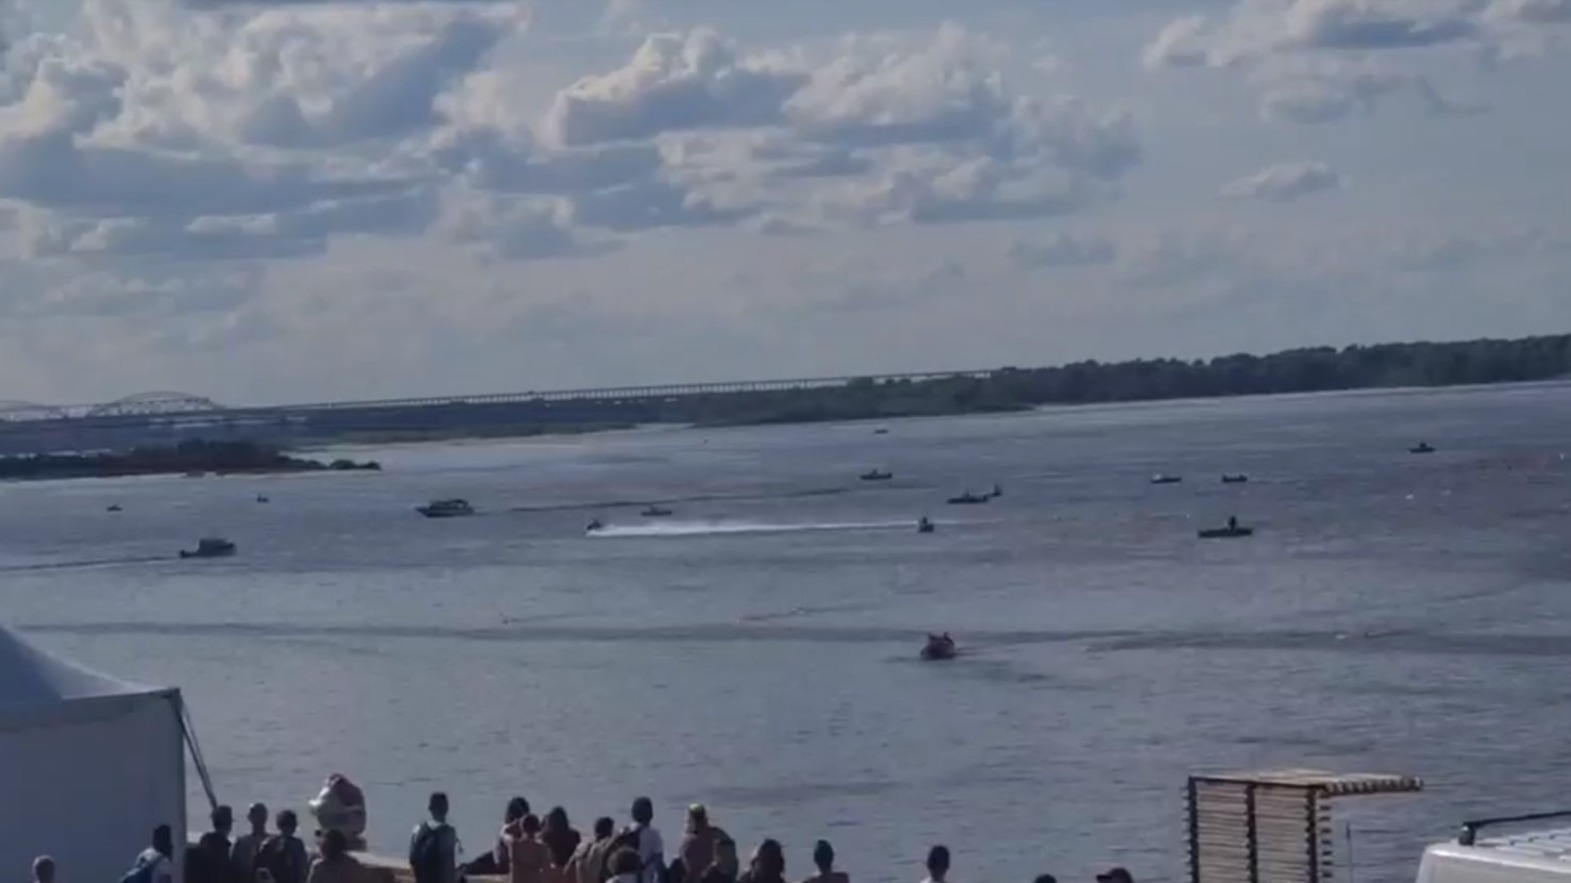 В Нижнем Новгороде гидроцикл пролетел через группу участников заплыва (ВИДЕО)